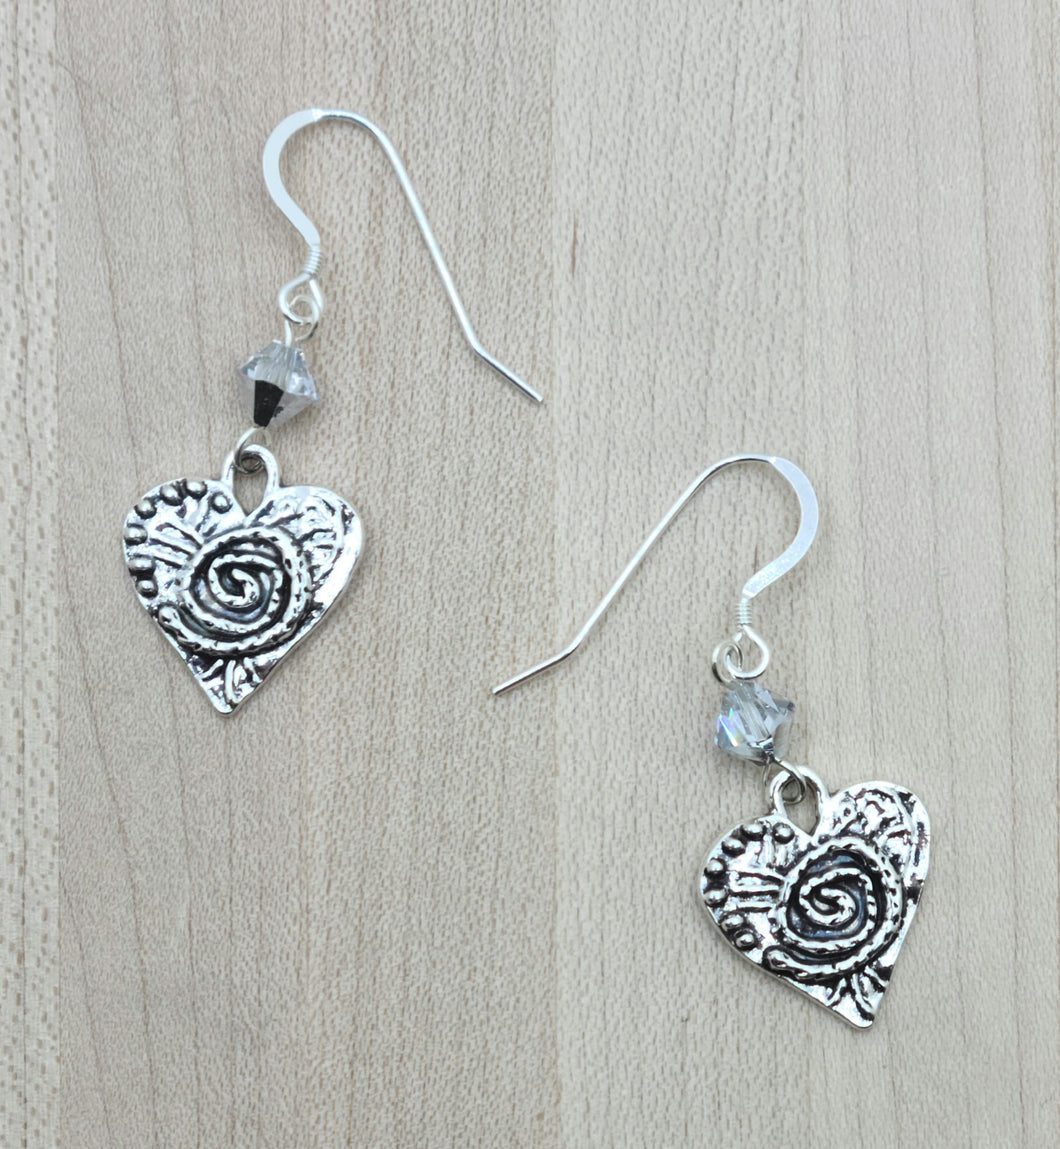 Silver Pewter Heart Earrings